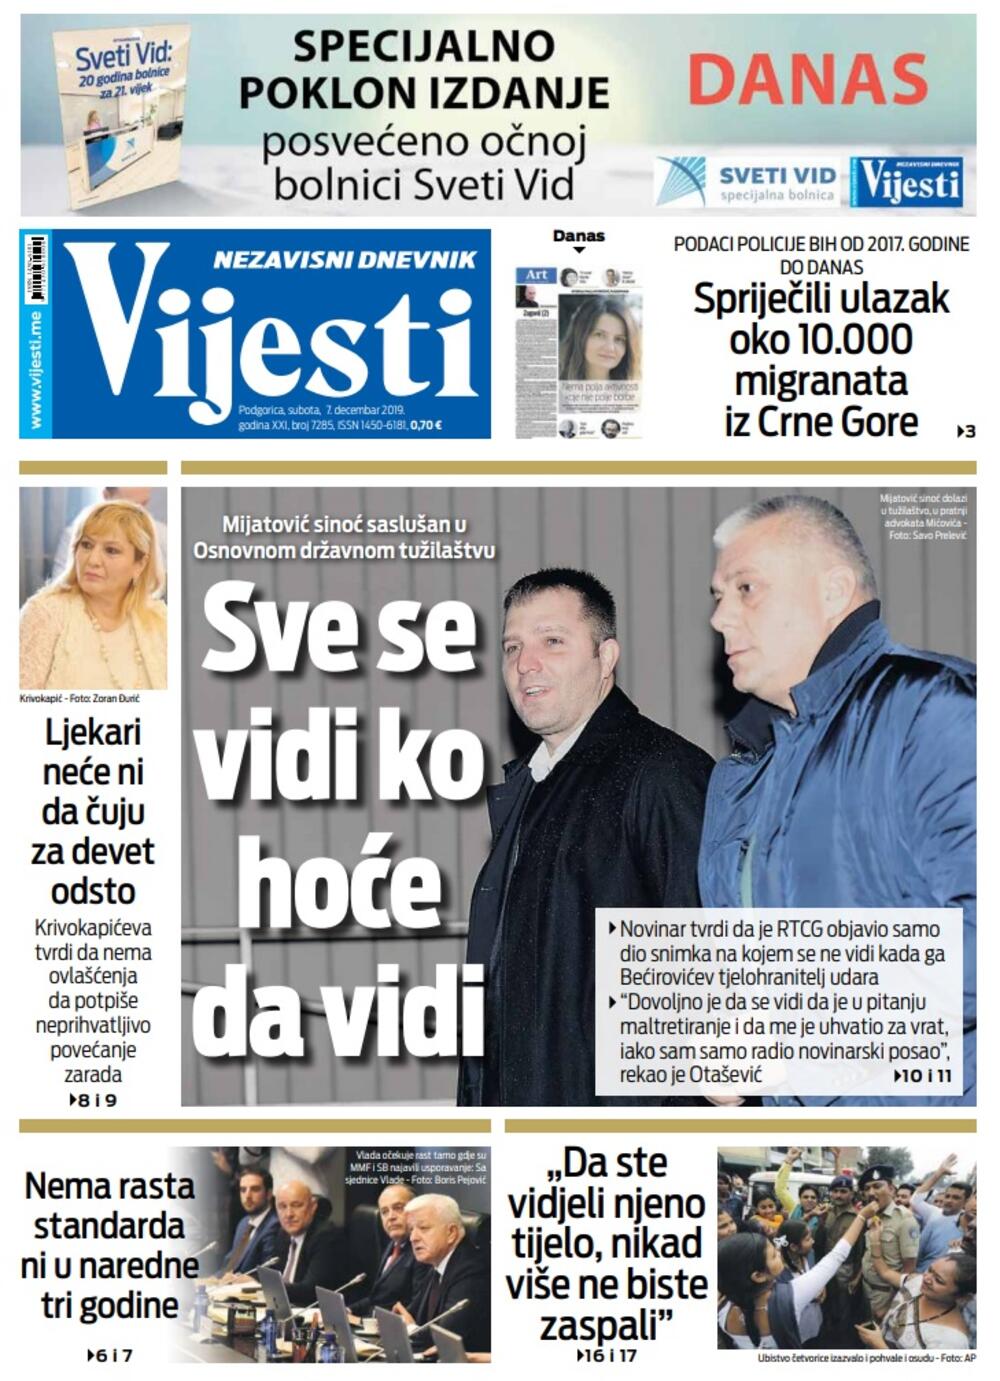 Naslovna strana "Vijesti" za 7. decembar 2019. godine, Foto: "Vijesti"